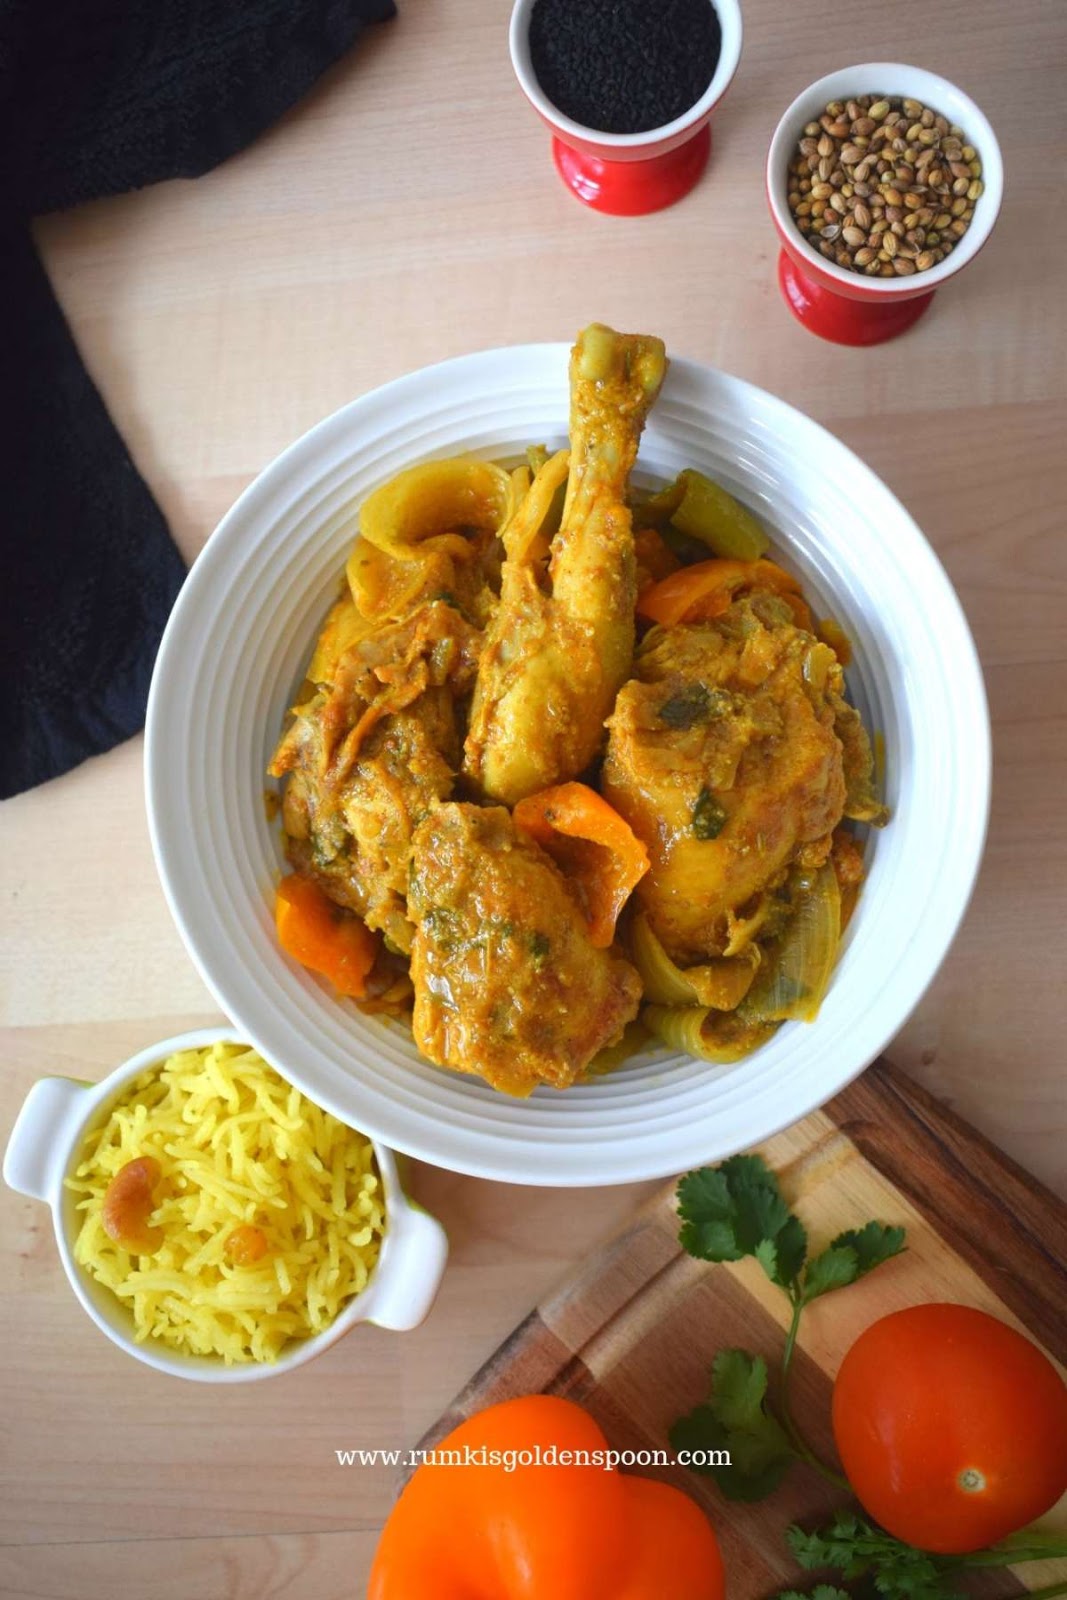 karahi chicken, Kadai Chicken, how to make karahi chicken, chicken curry recipe Indian, best chicken curry recipe, karahi chicken recipe, kadai murgh, karahi murgh, gosht karahi, Chicken Curry, Rumki's Golden Spoon